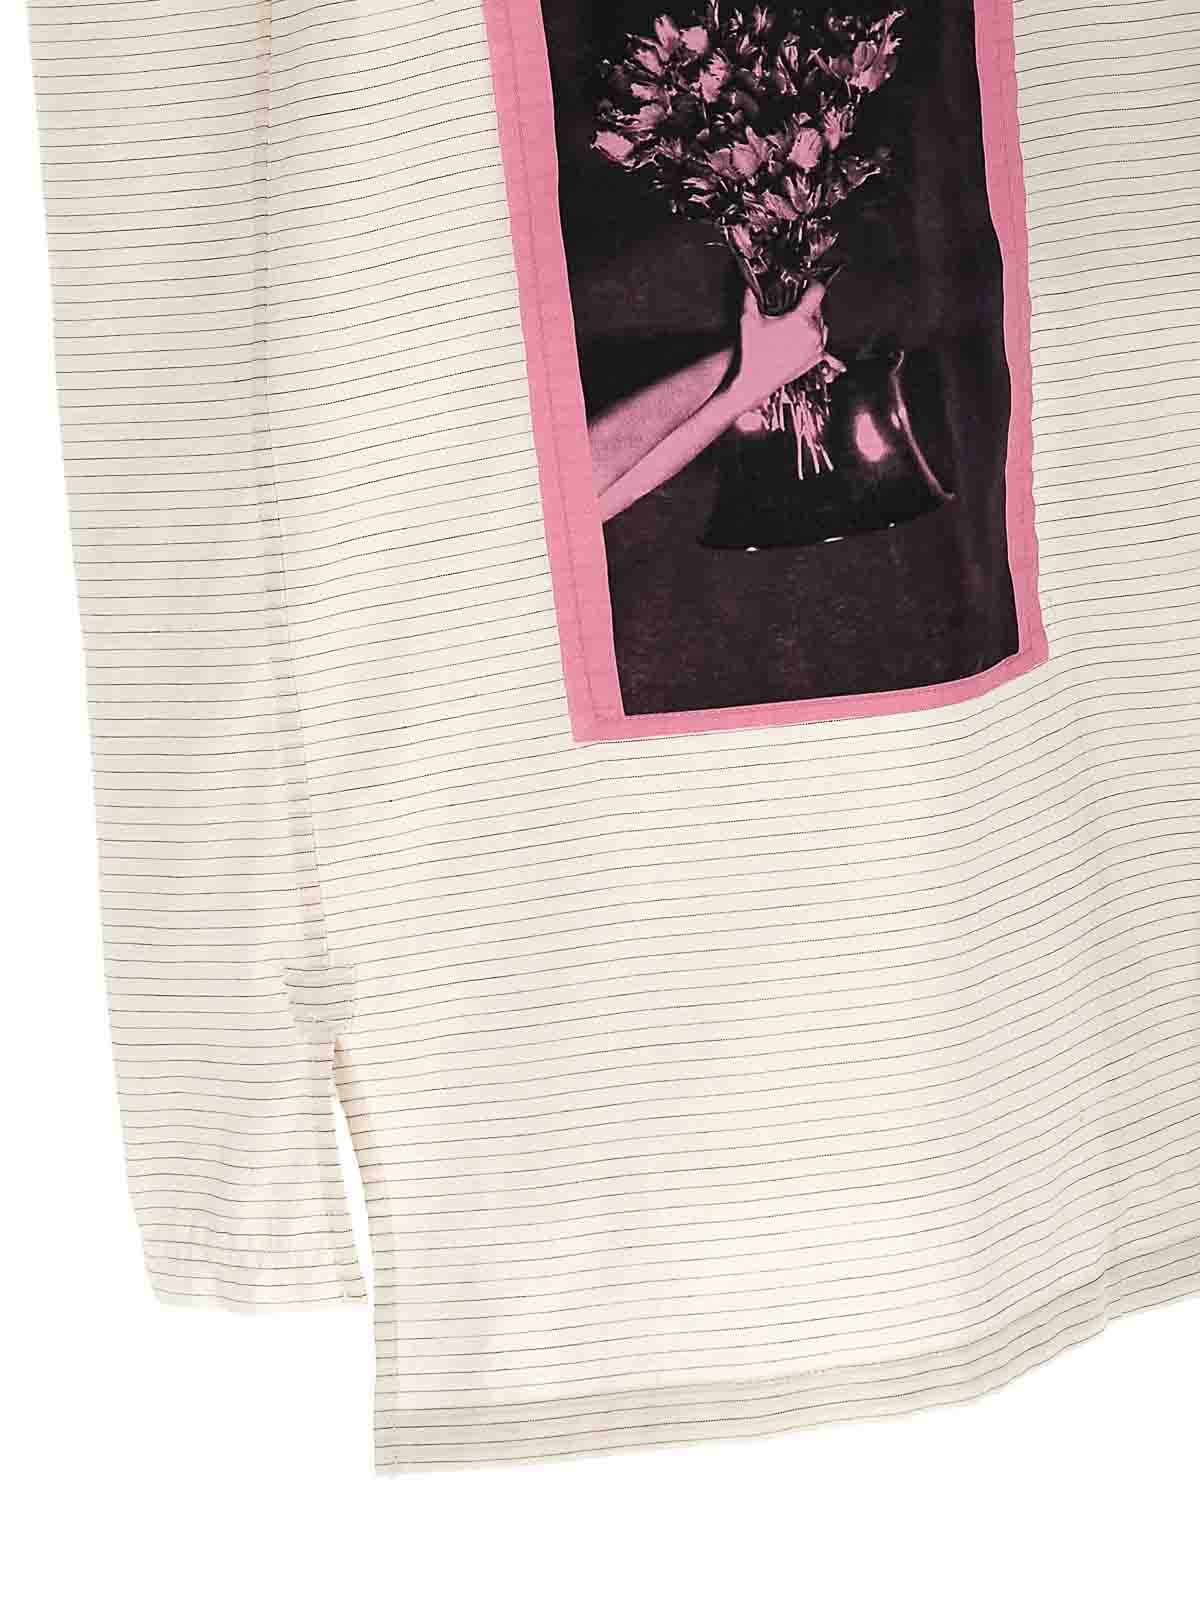 Shop Lanvin Artwork Asymetric Shirt In Blanco